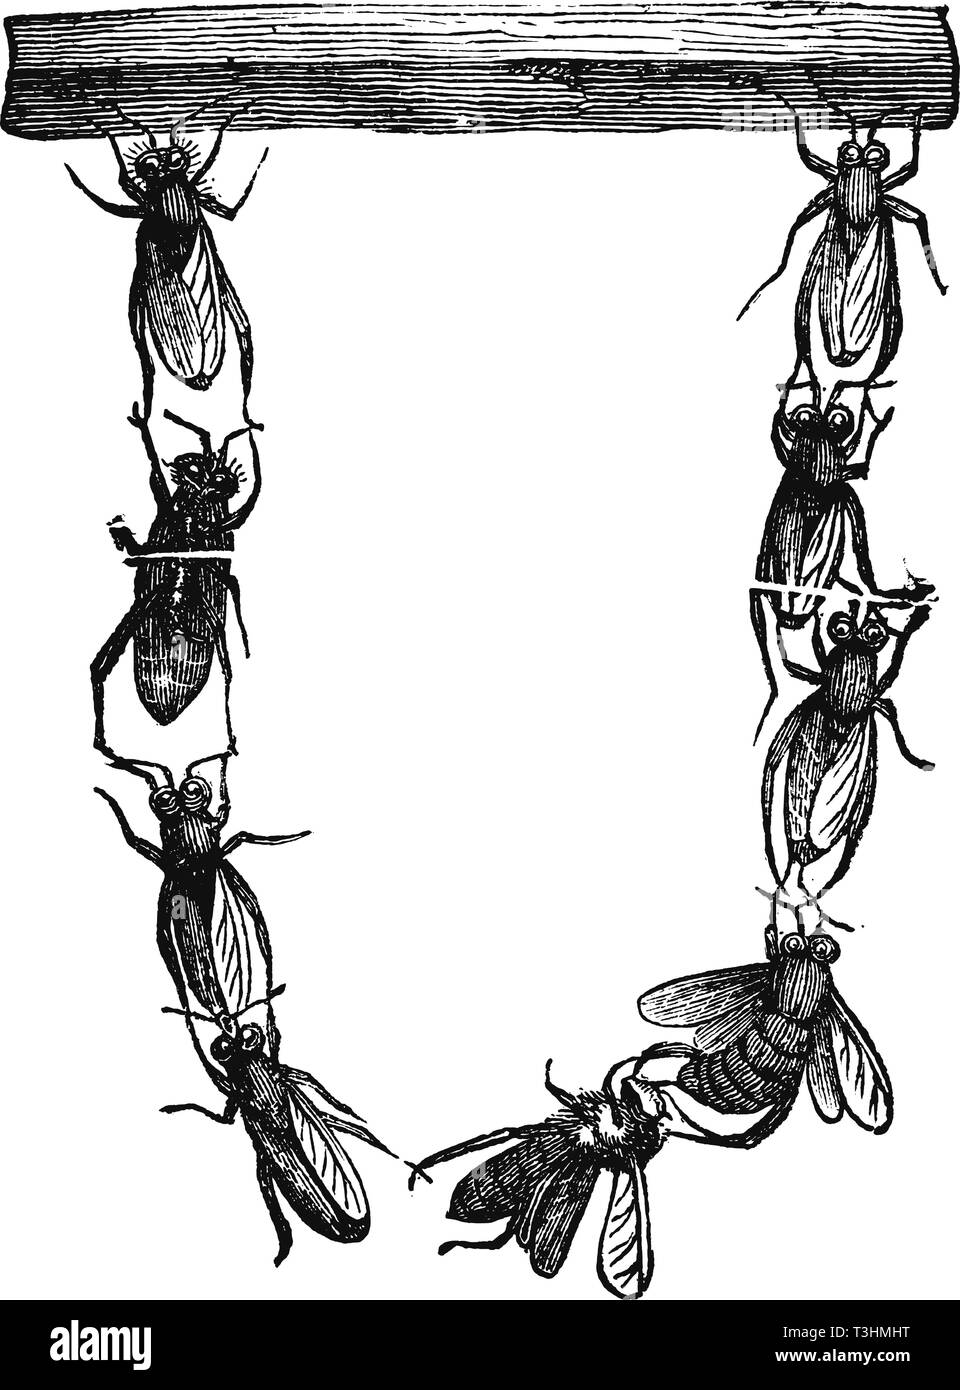 Dessin vectoriel d'antiquités ou d'une gravure de grunge vintage illustration du groupe d'abeilles Les abeilles à miel ou à partir ensemble pour construire nouveau nid.de livre Bienenfreund Neuester Illustrierter, imprimé à Leipzig, Allemagne, 1852. Illustration de Vecteur